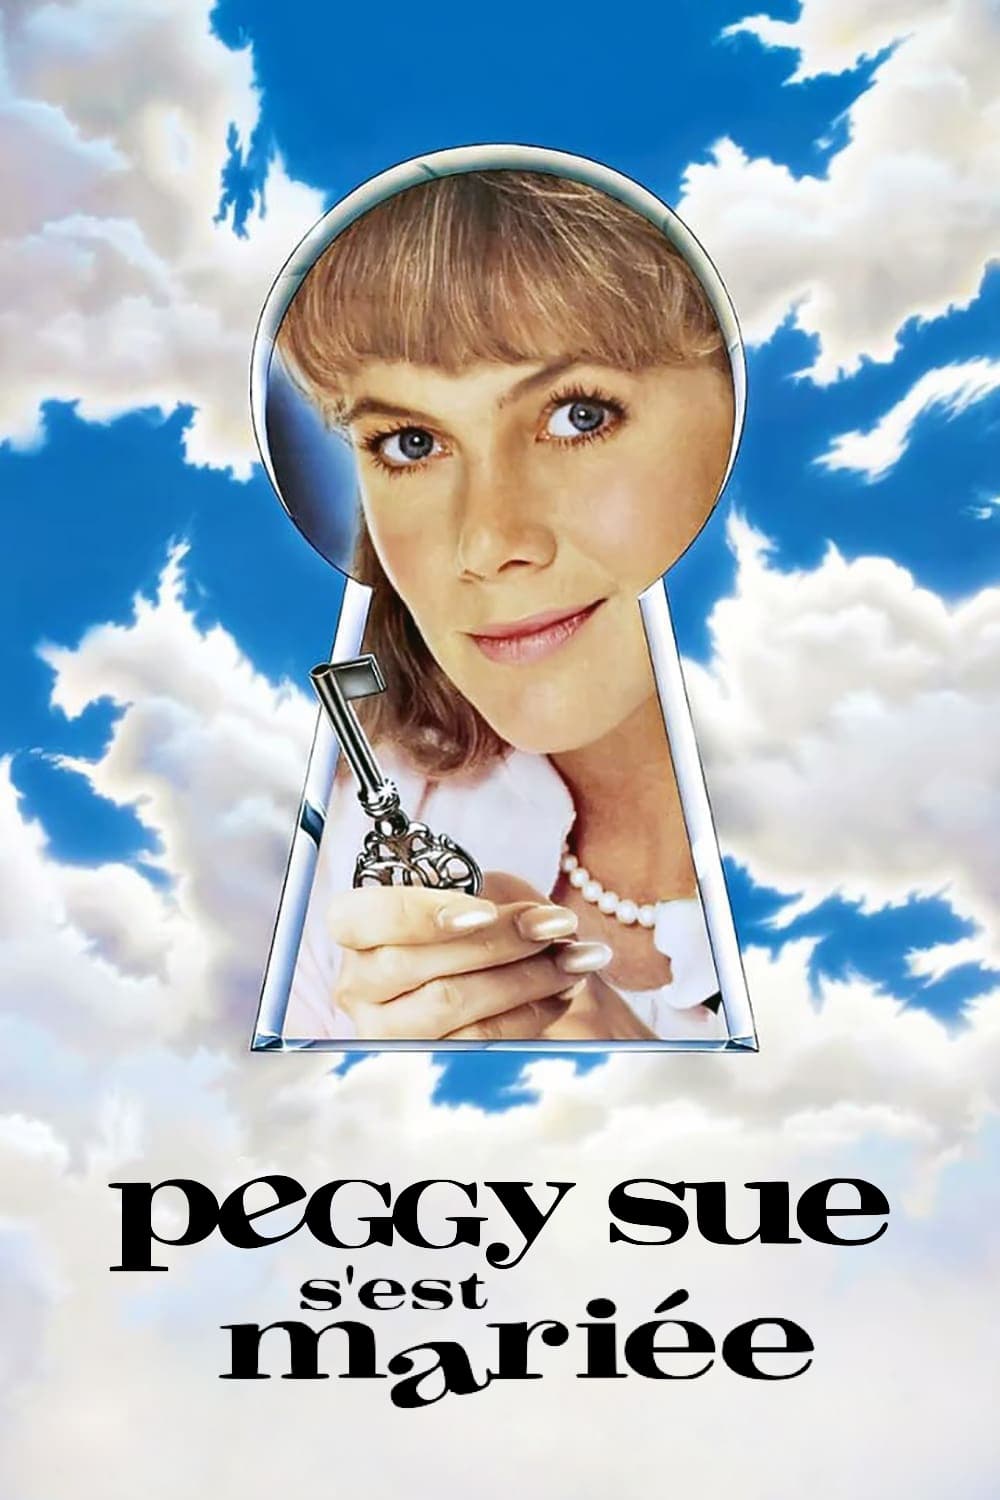 Peggy Sue s'est mariée est-il disponible sur Netflix ou autre ?